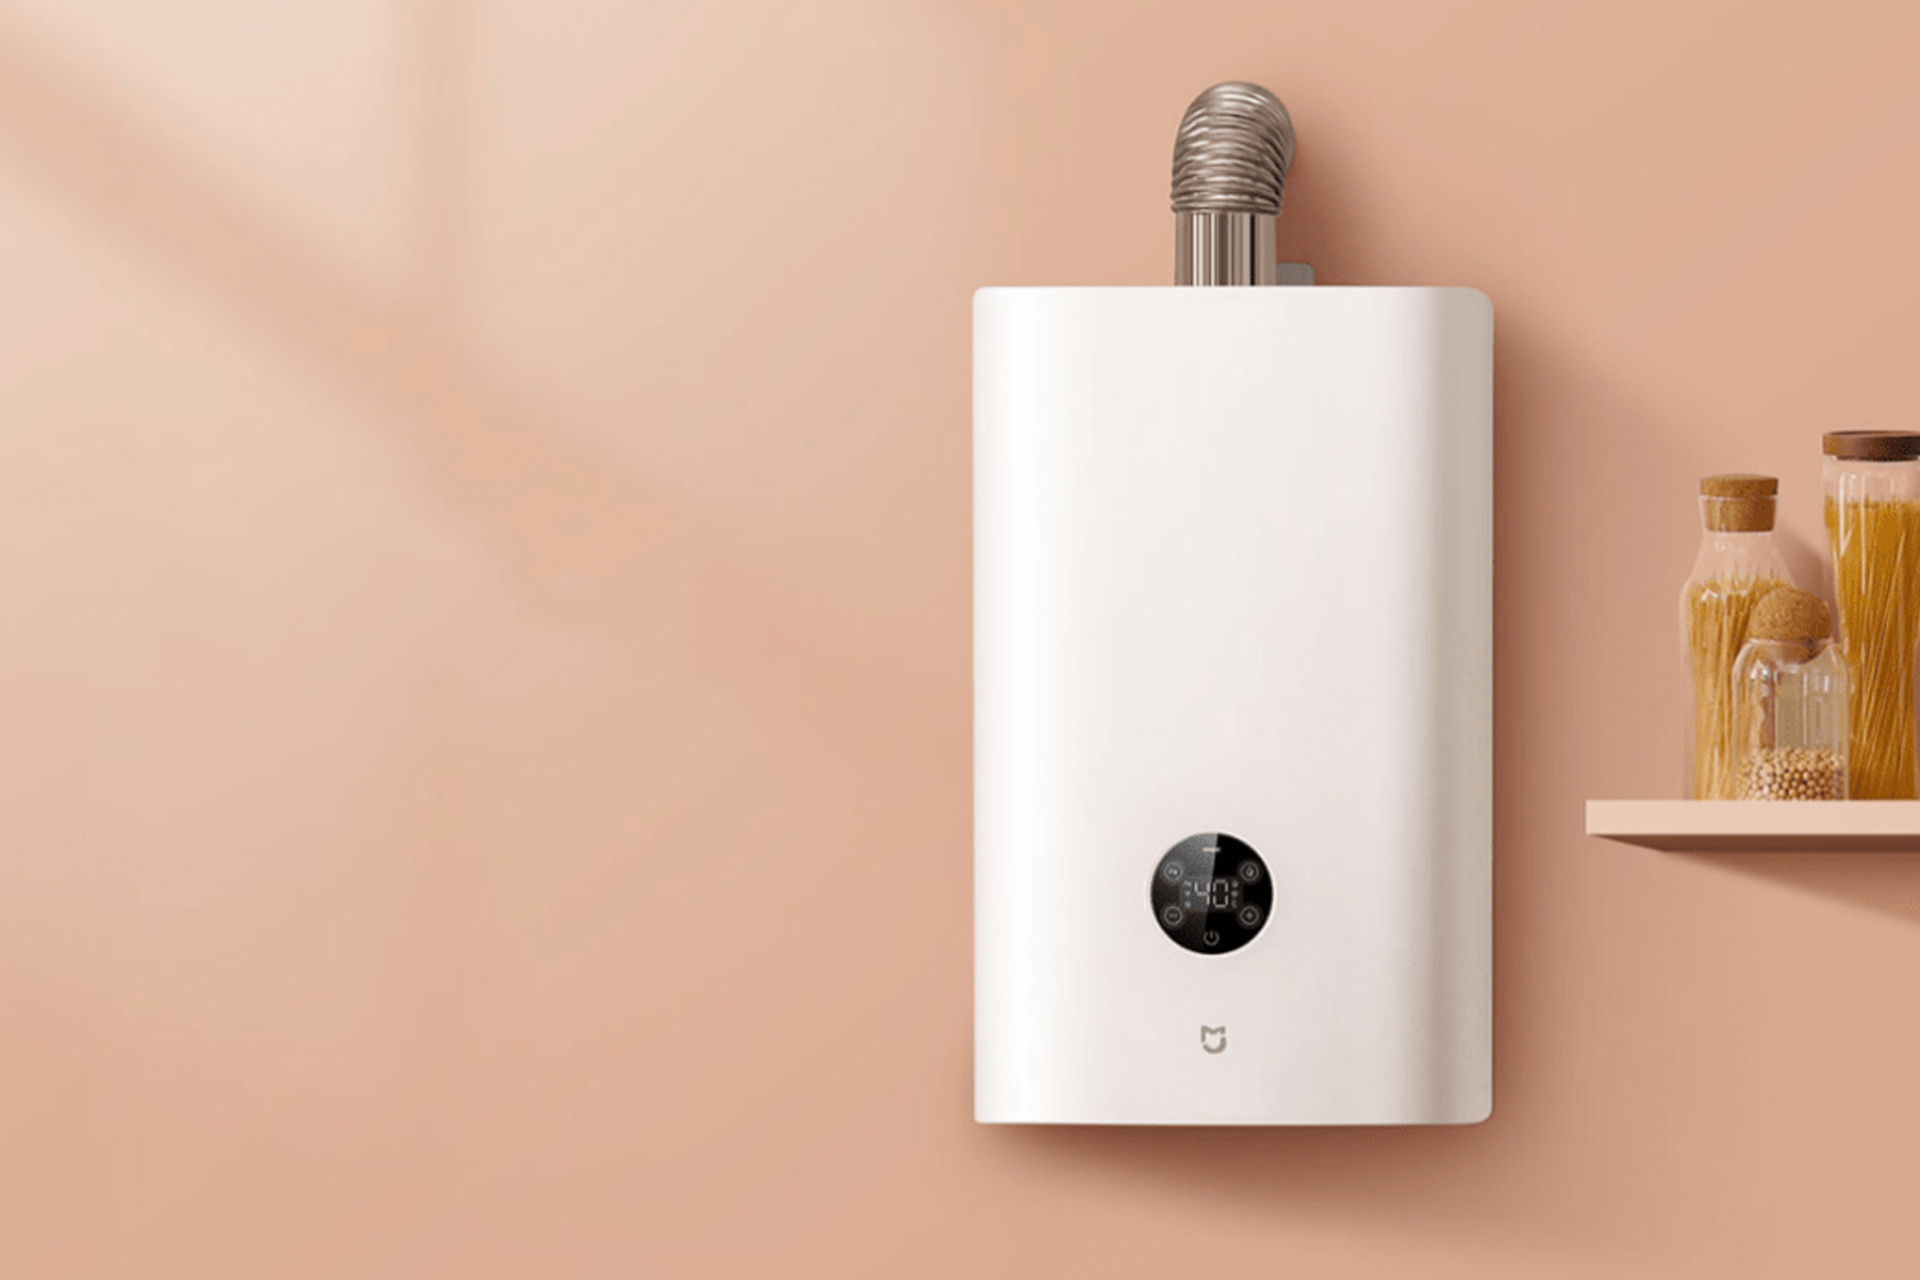 Xiaomi Meijia smart water heater on the wall